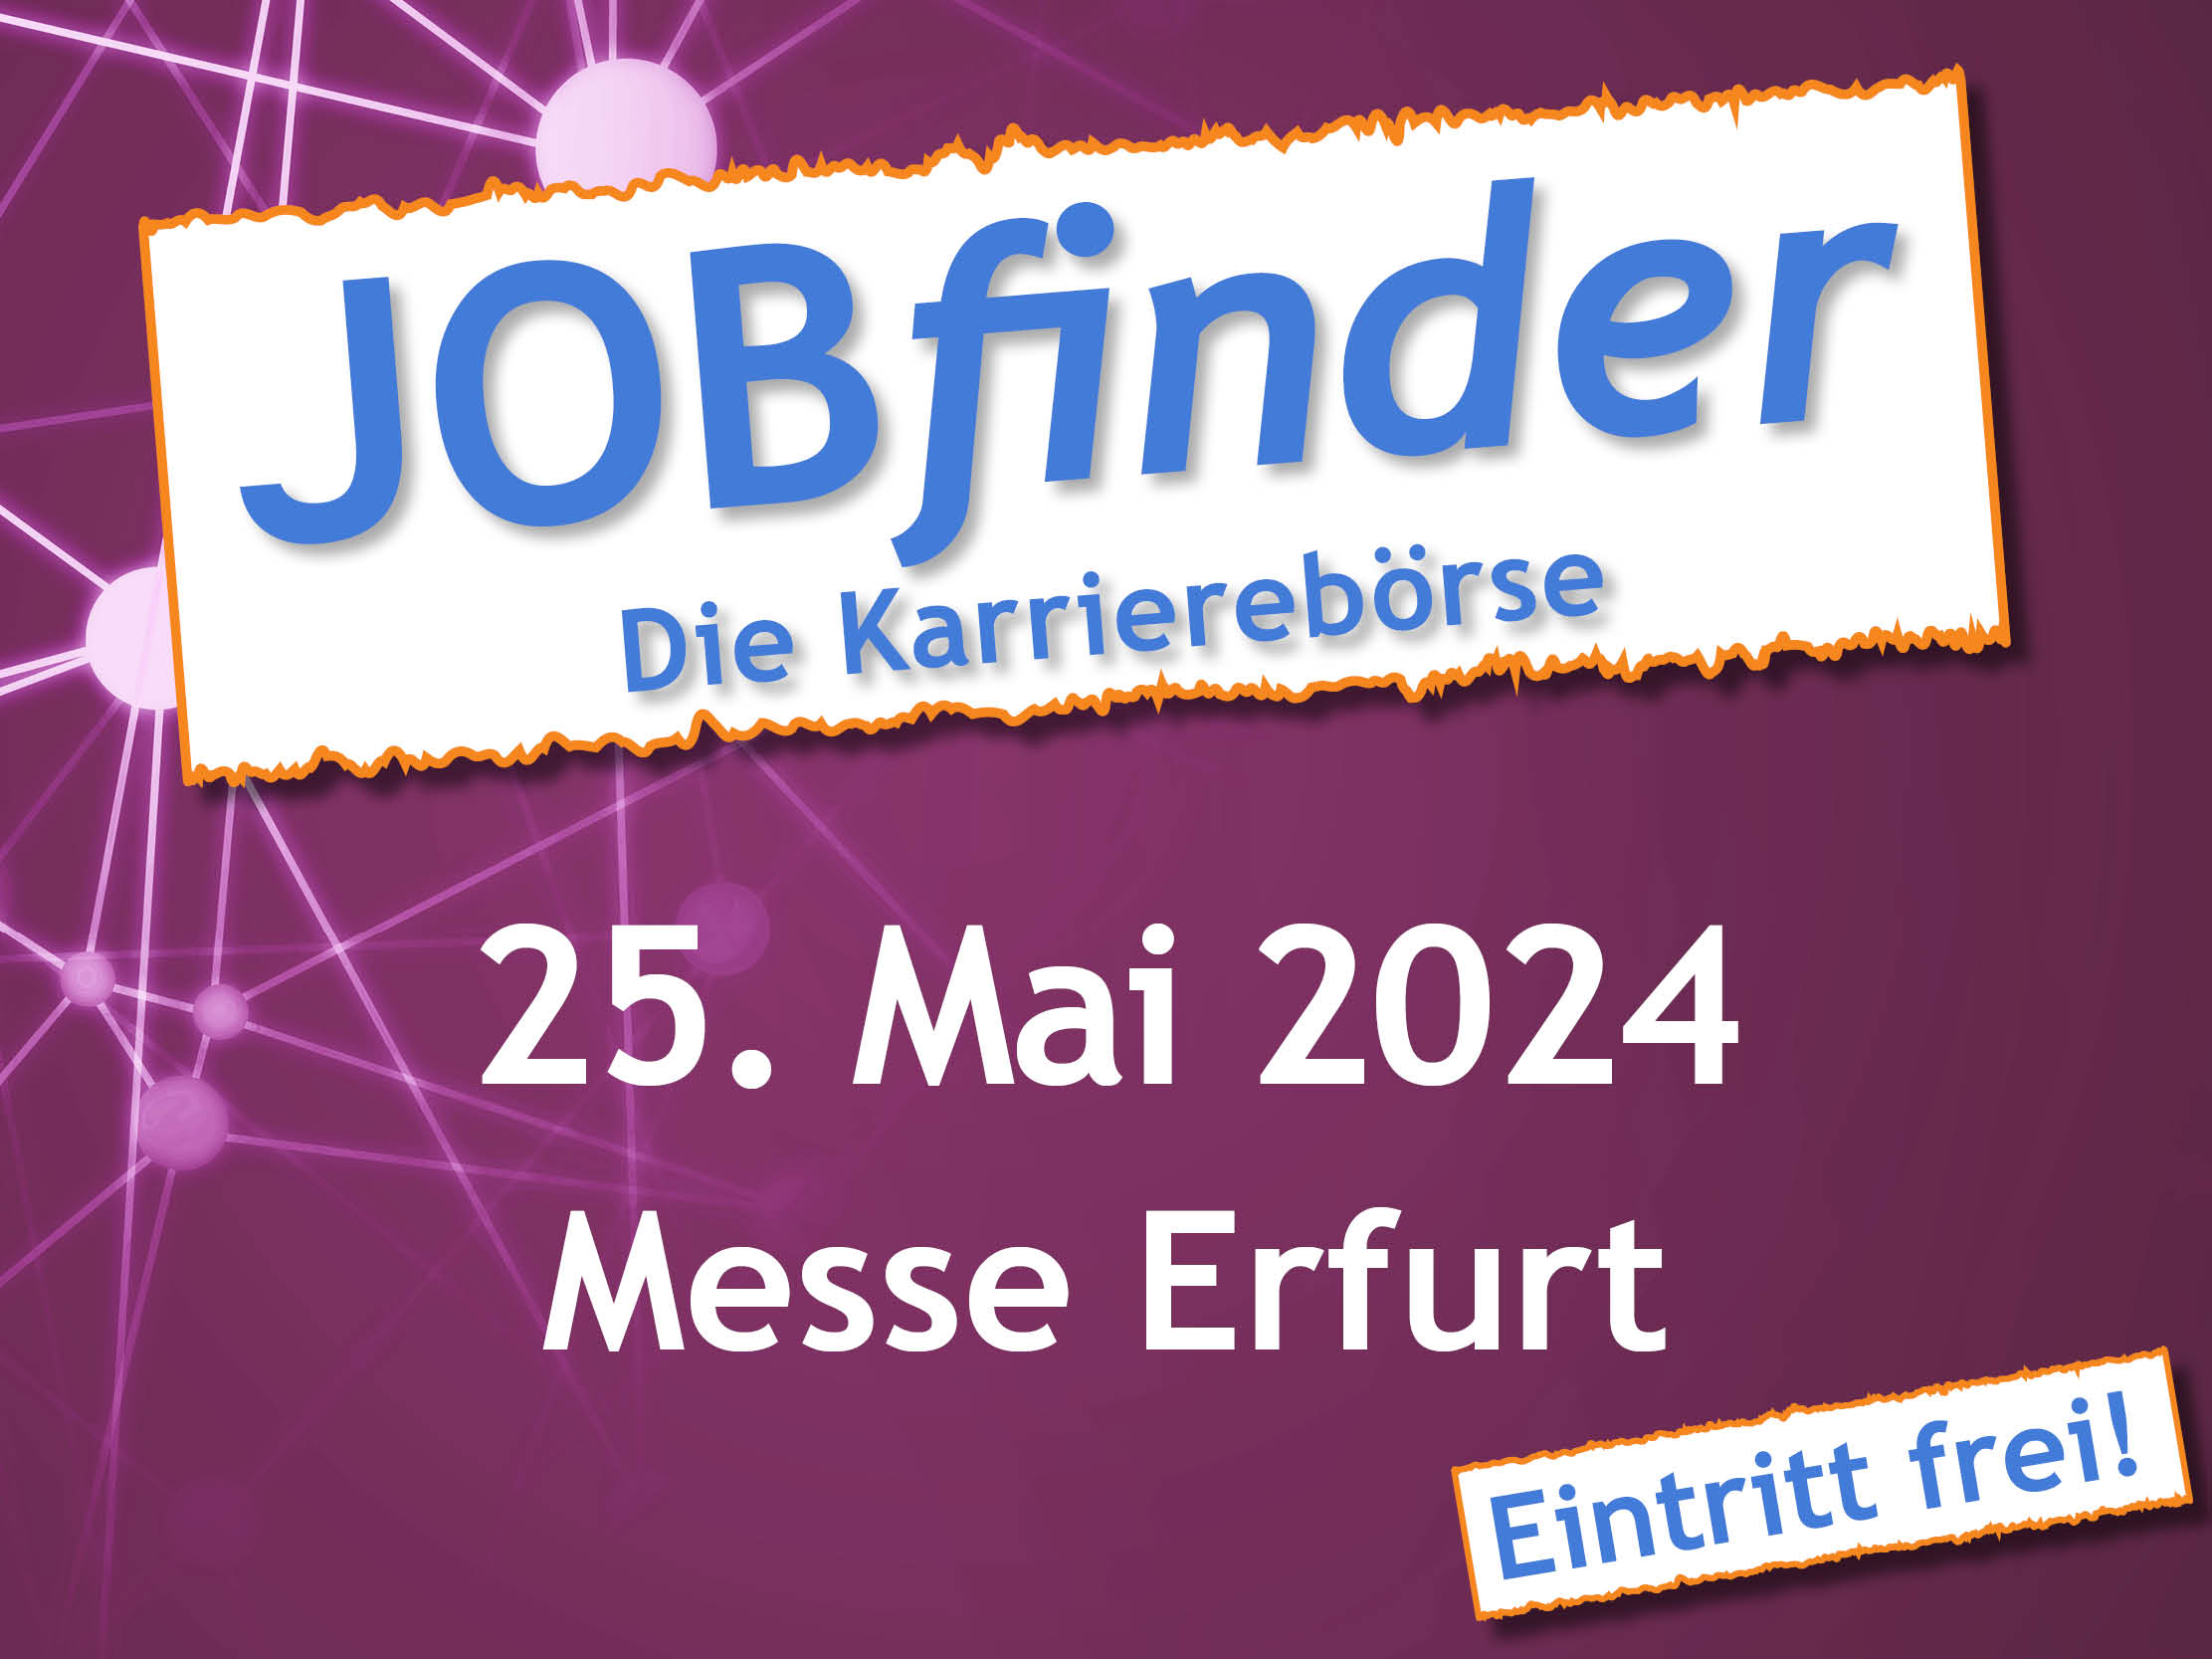 JOBfinder - Die Karrierebörse